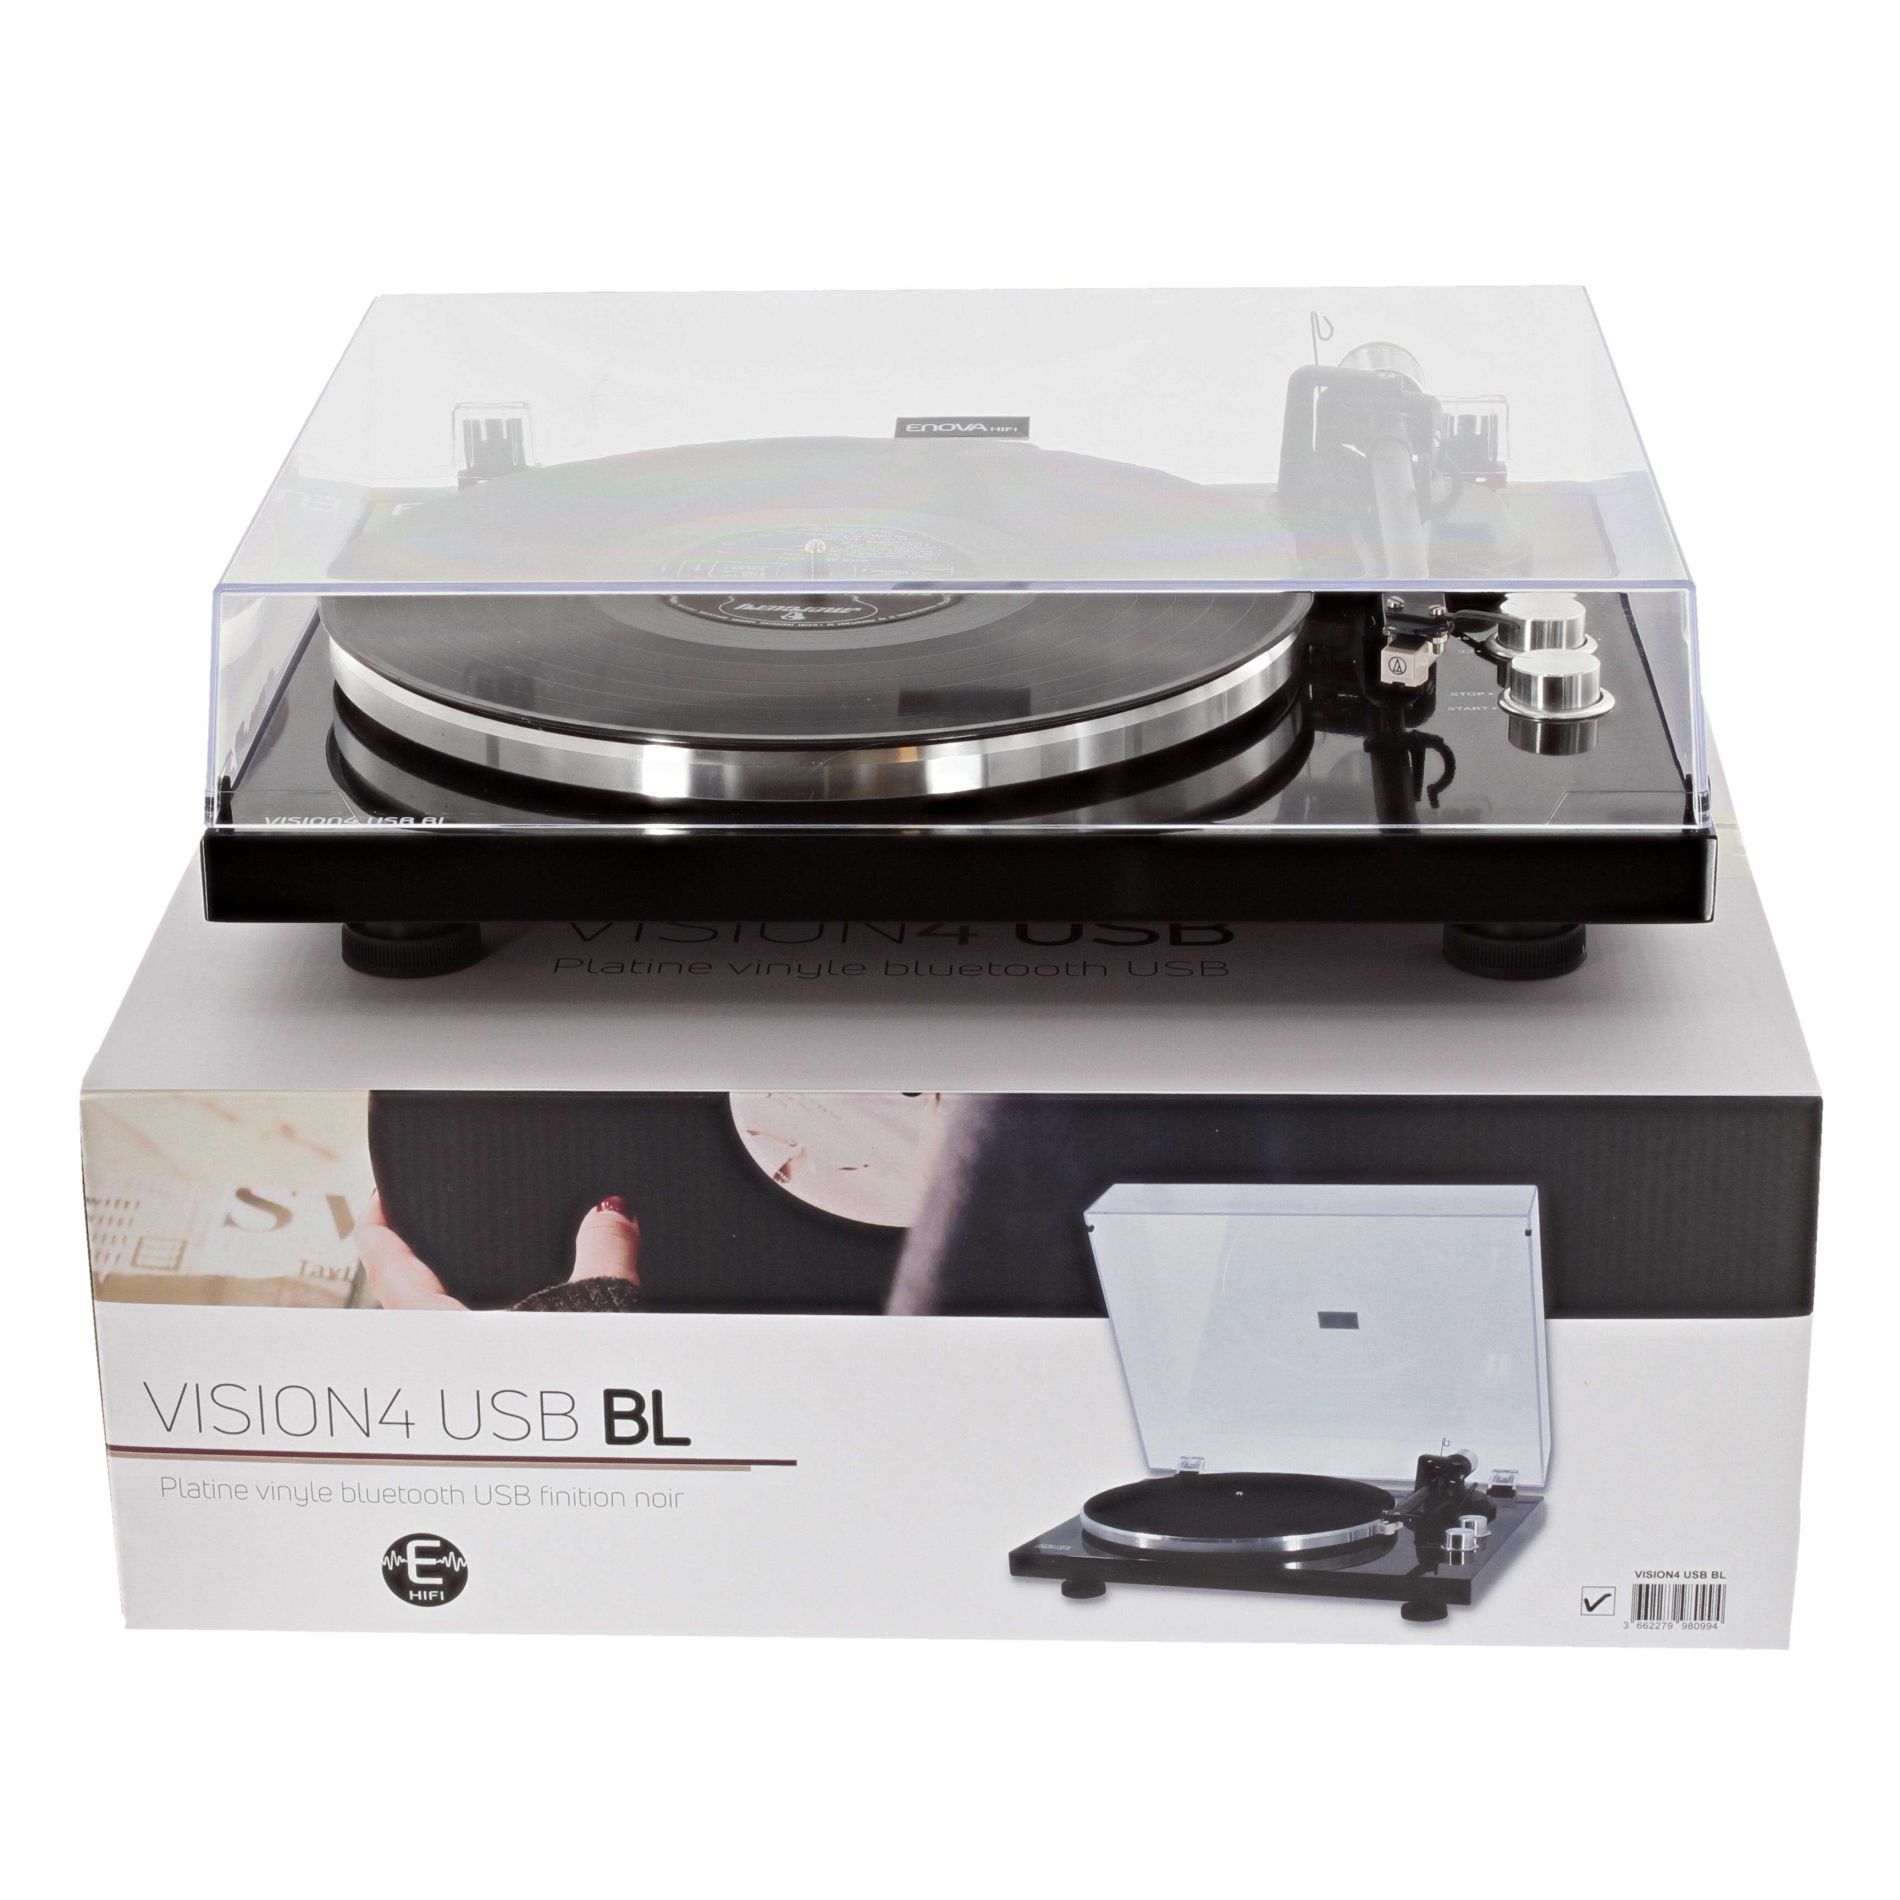 ENOVA Vision4 USB BL platine vinyle noire cellule audio technica